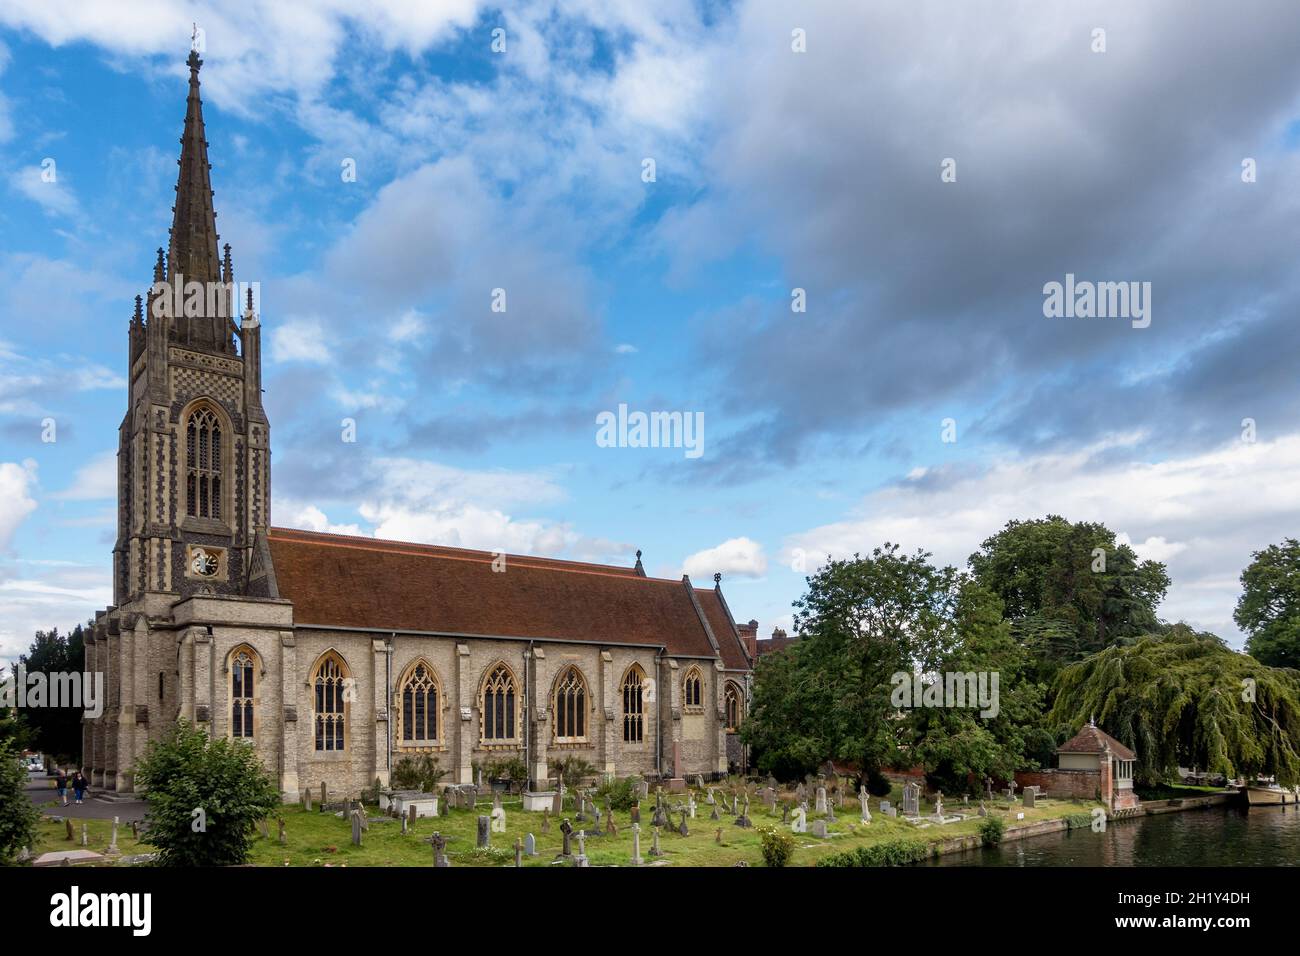 Église All Saints et chantier naval à côté de la Tamise à Marlow, Buckinghamshire, Angleterre. Banque D'Images